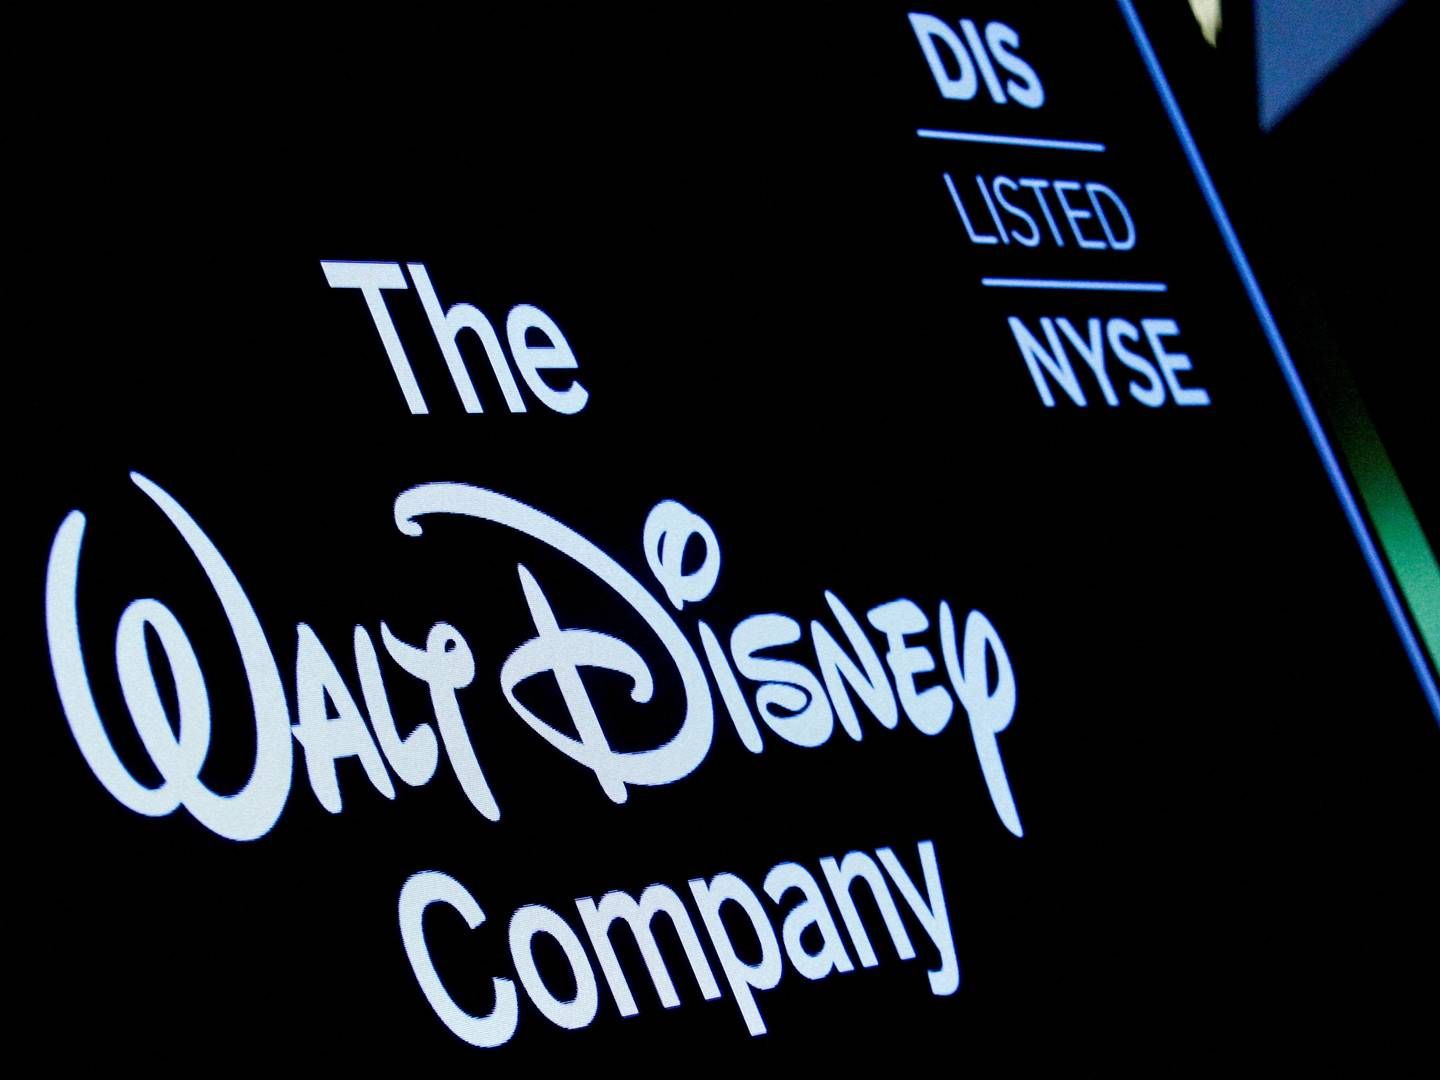 Der er optræk til nye magtkampe om Disneys retning, skriver Wall Street Journal. | Foto: Brendan Mcdermid/Reuters/Ritzau Scanpix